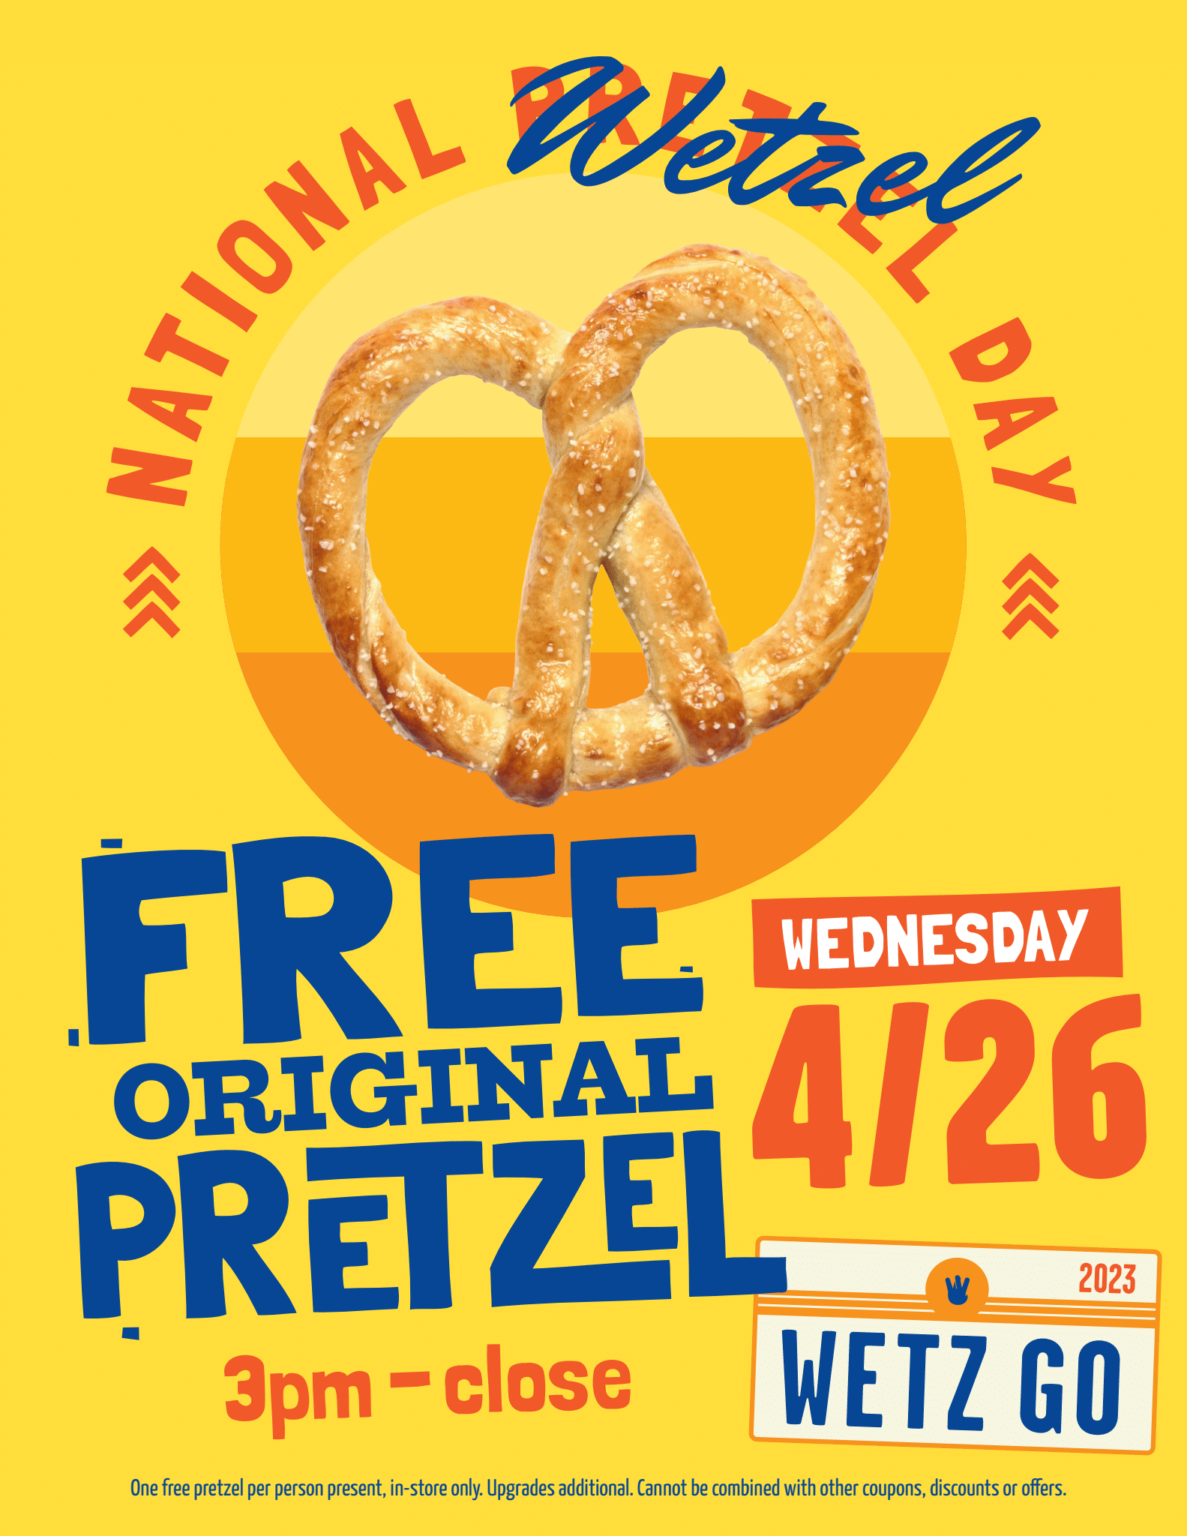 Wetzel's Pretzels Enjoy free Original Pretzel on National Pretzel Day